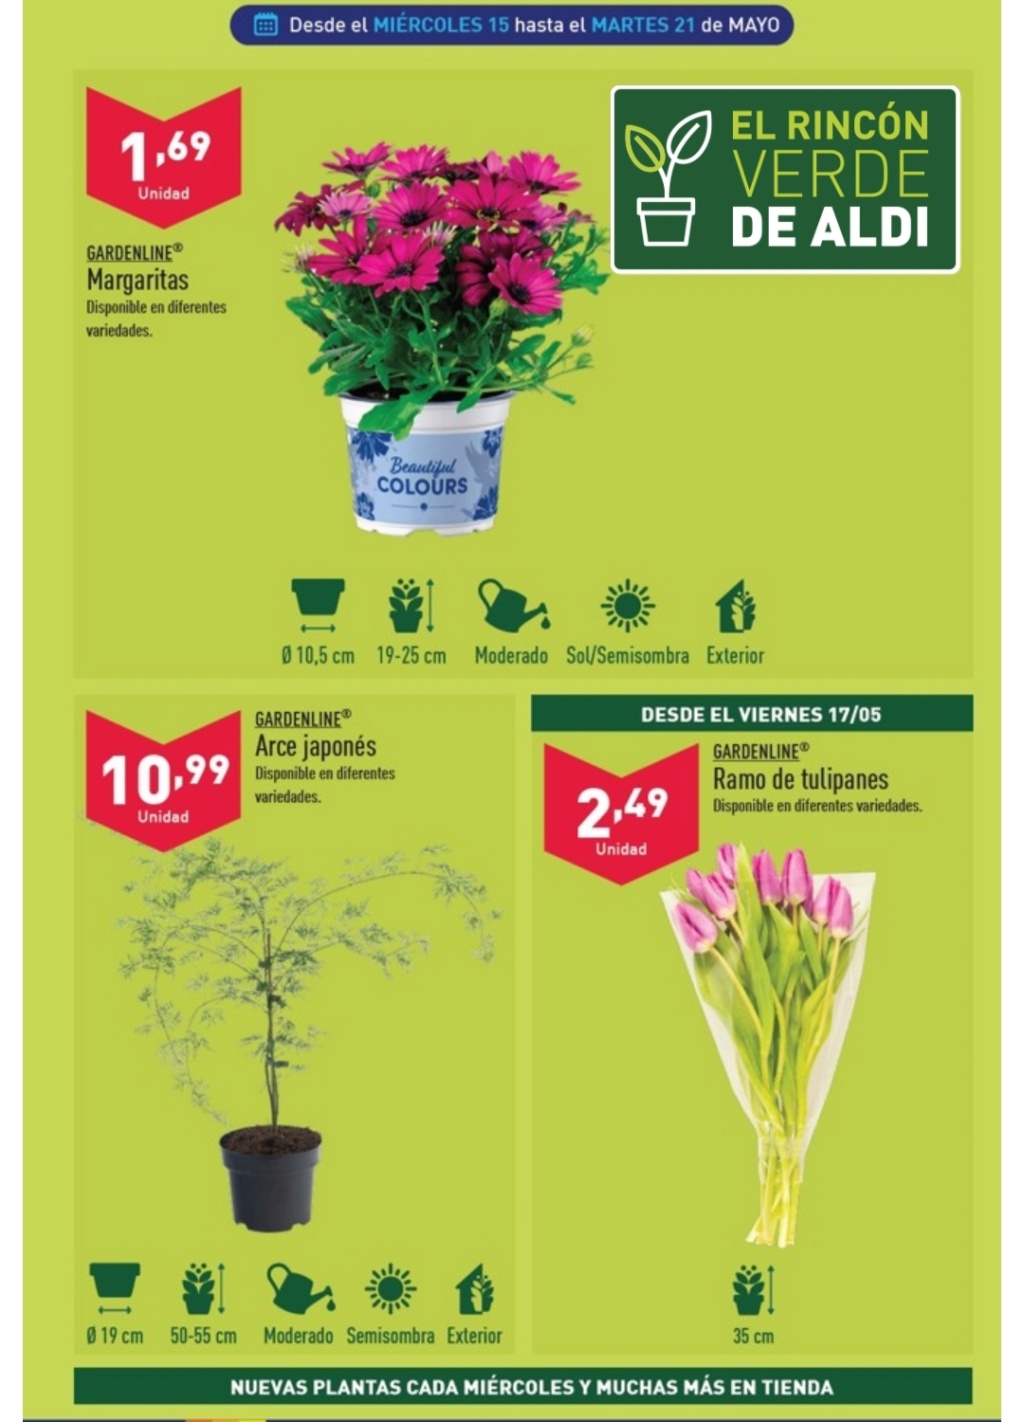 Ofertas semanales de jardinería en ALDI y LIDL - Página 20 Img_2086